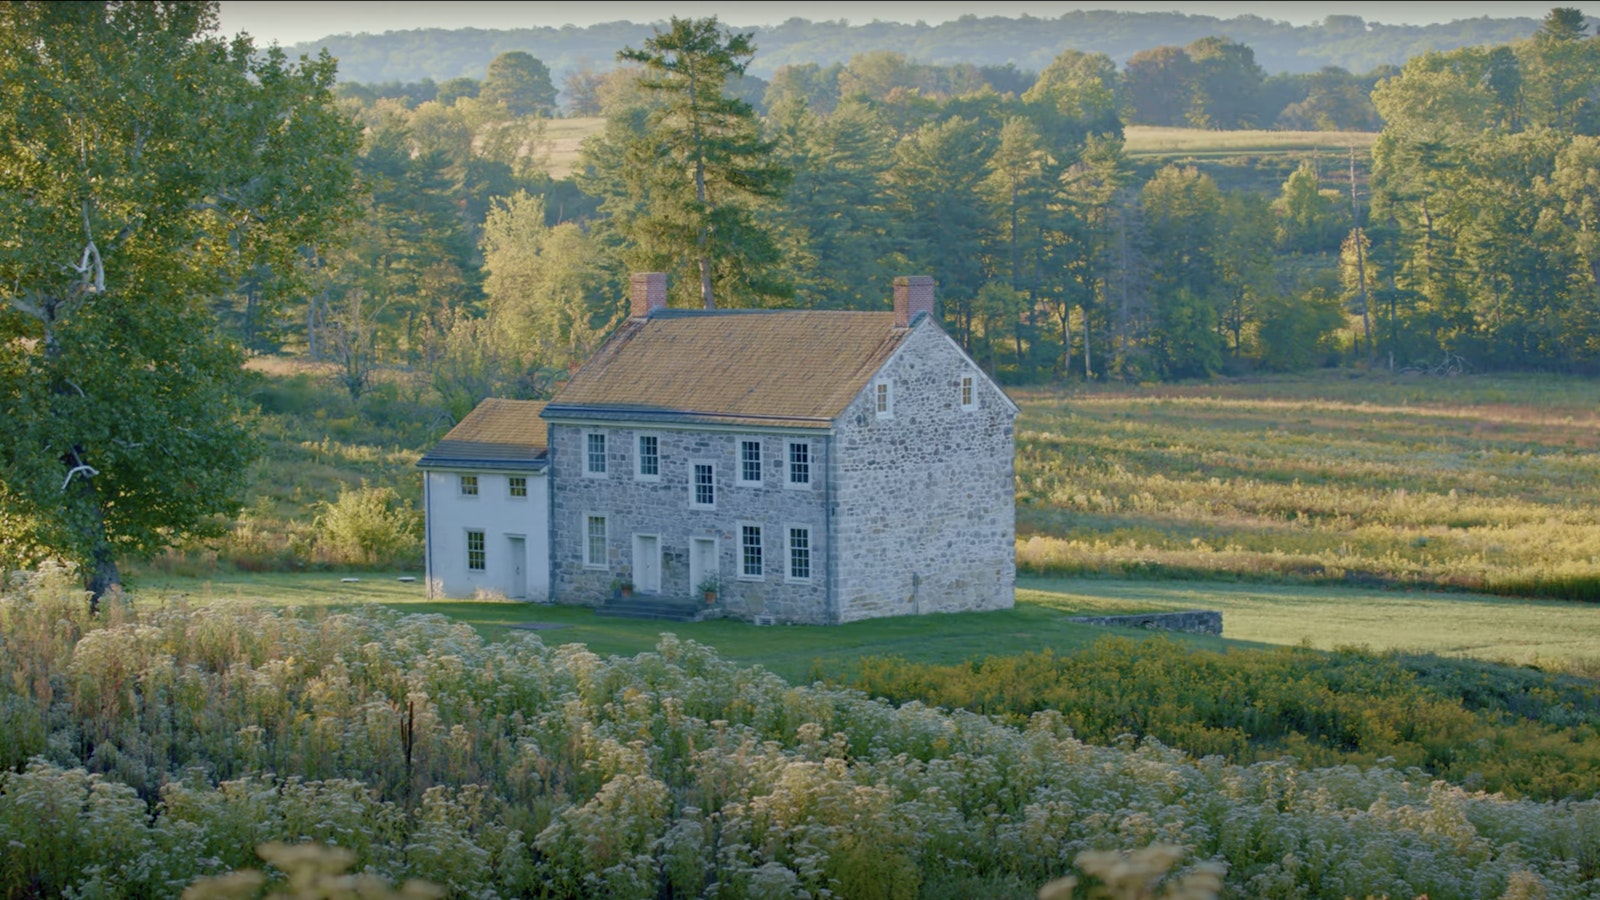 A stone farm house sits among a field